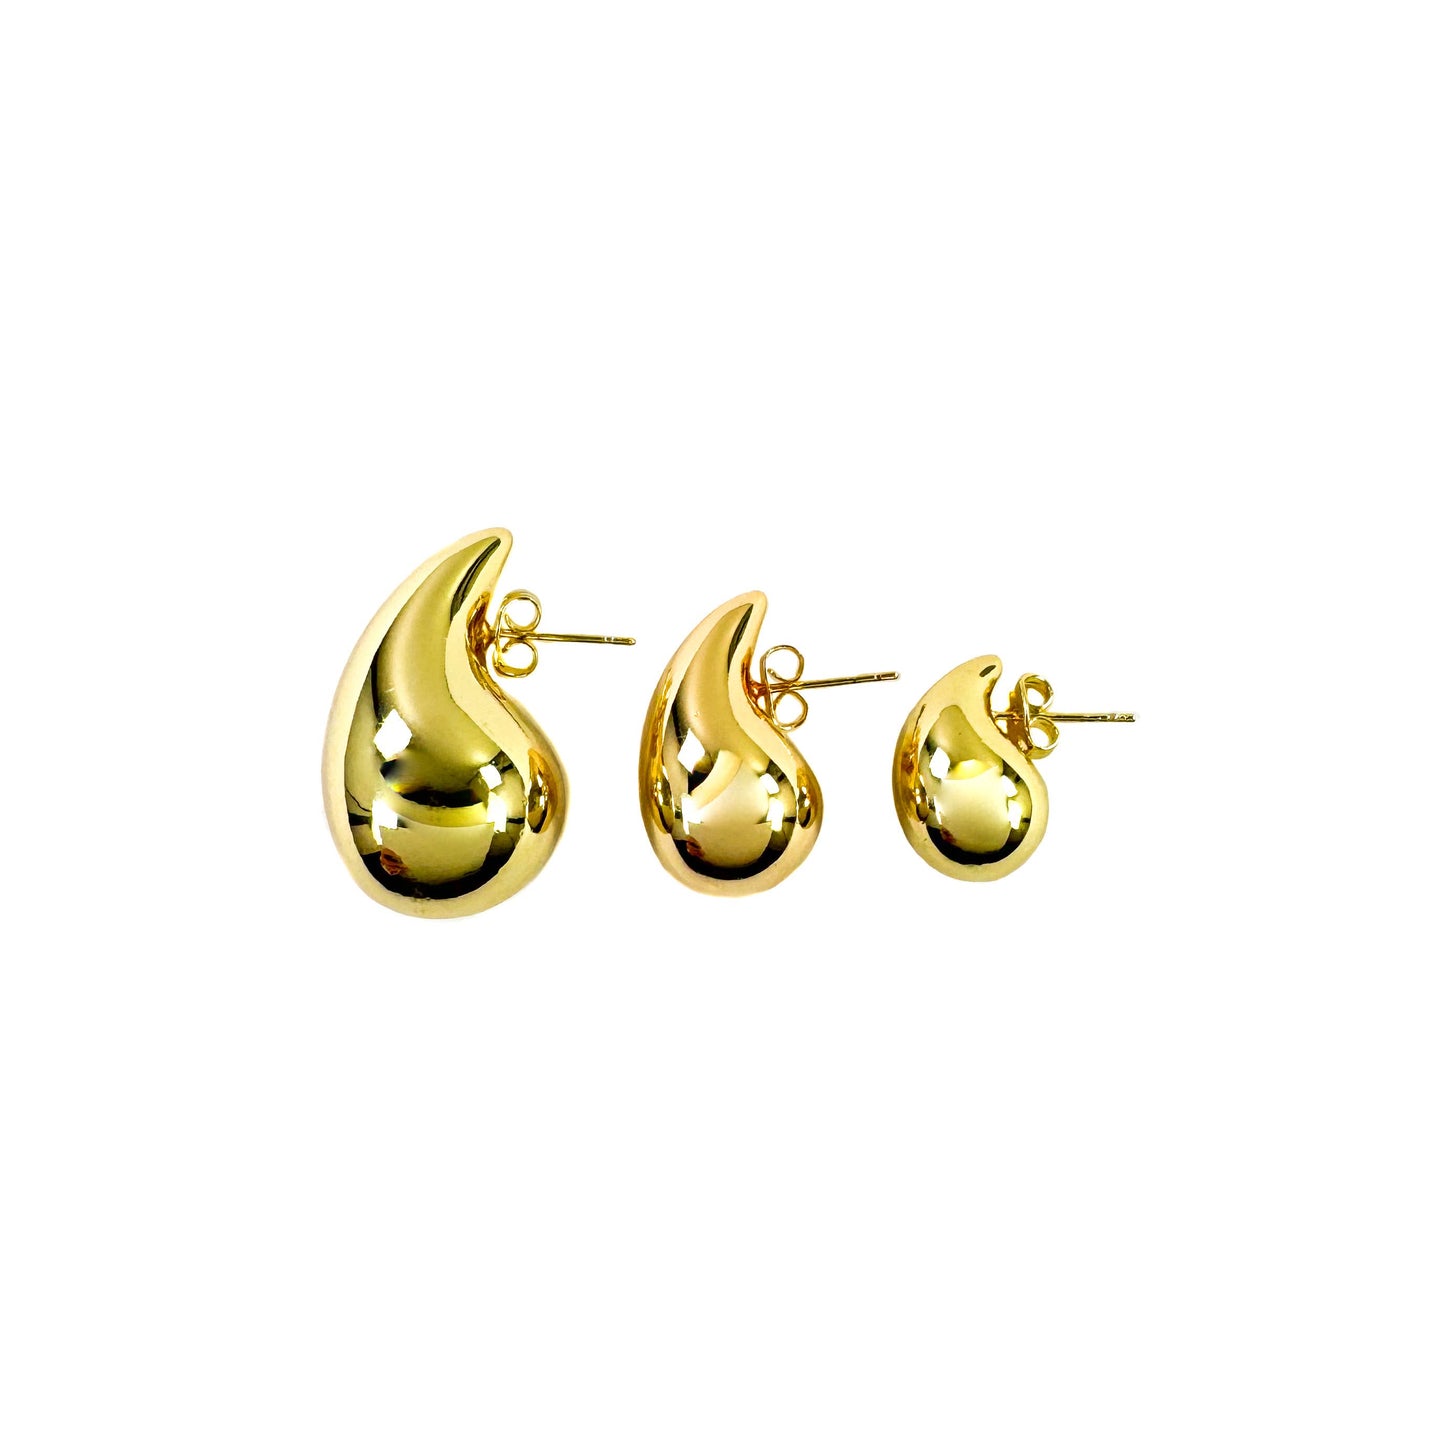 Teardrop Waterdrop Earrings 18k Gold filled- Silver filled